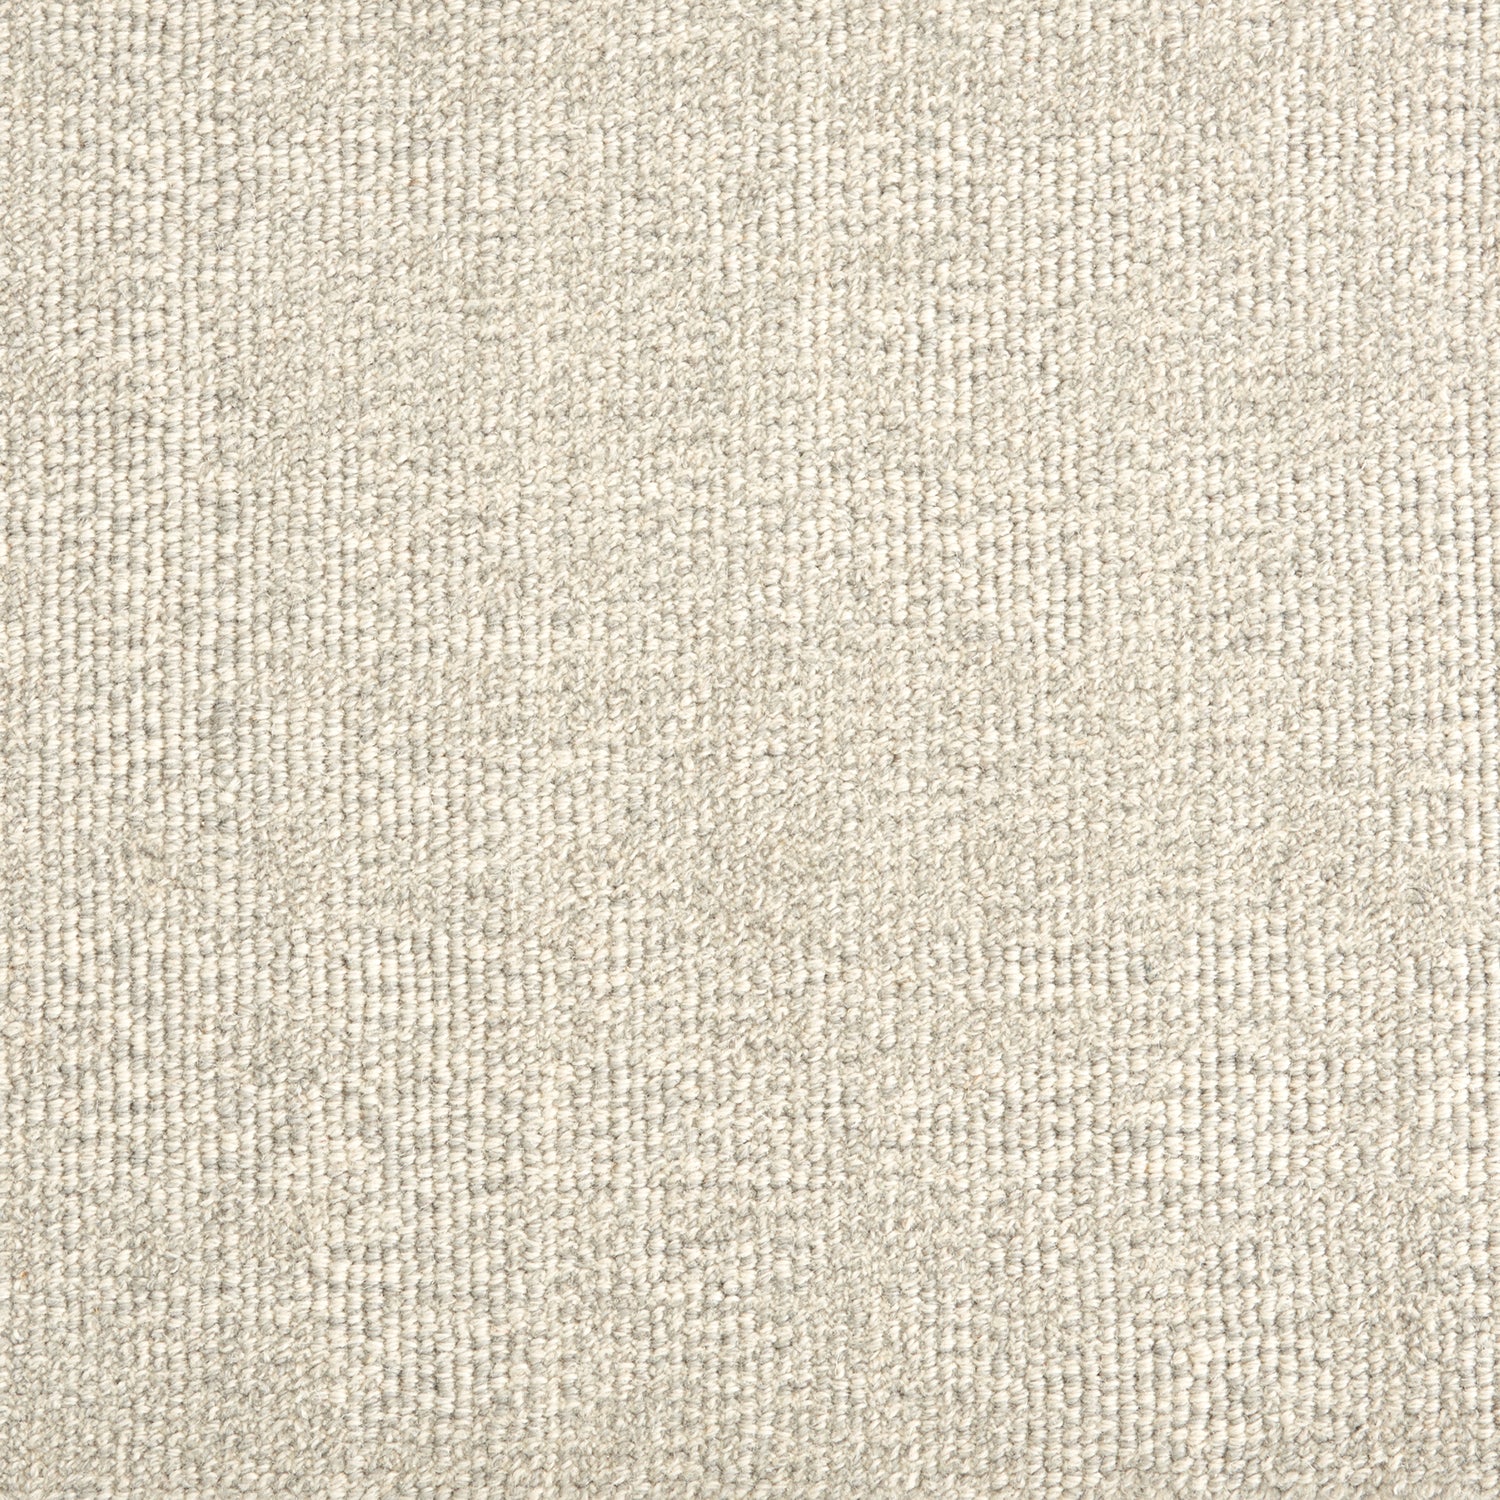 Wool broadloom carpet swatch in a textured weave in mottled cream.